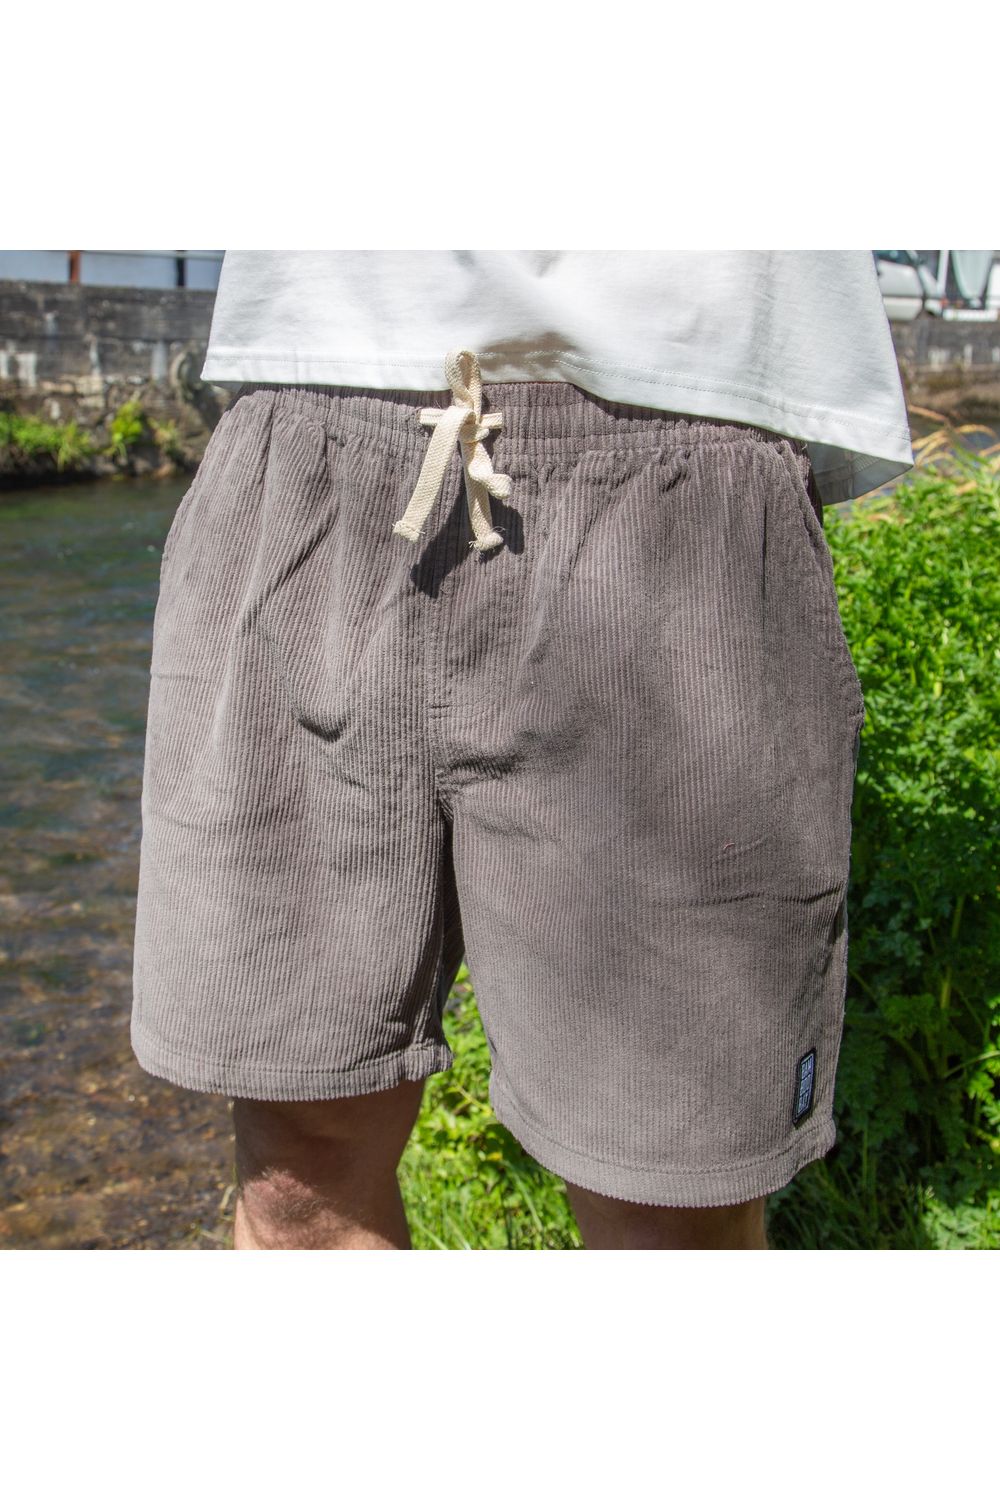 Bamboobay Grey Cord Shorts front